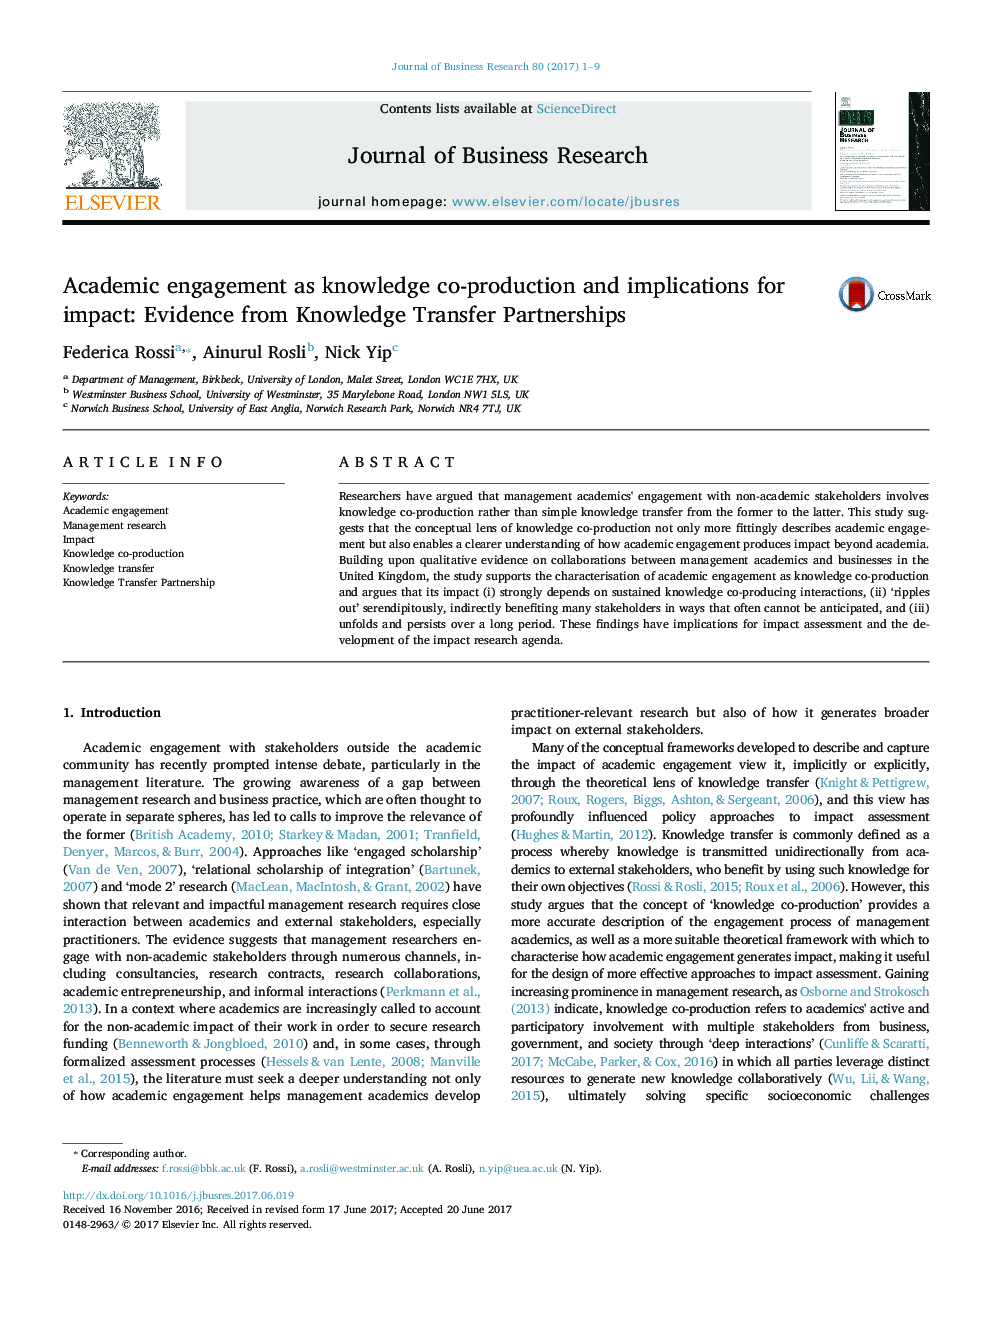 تعامل علمی به عنوان تولید همکاری دانش و پیامدهای آن: شواهد از مشارکت انتقال دانش 